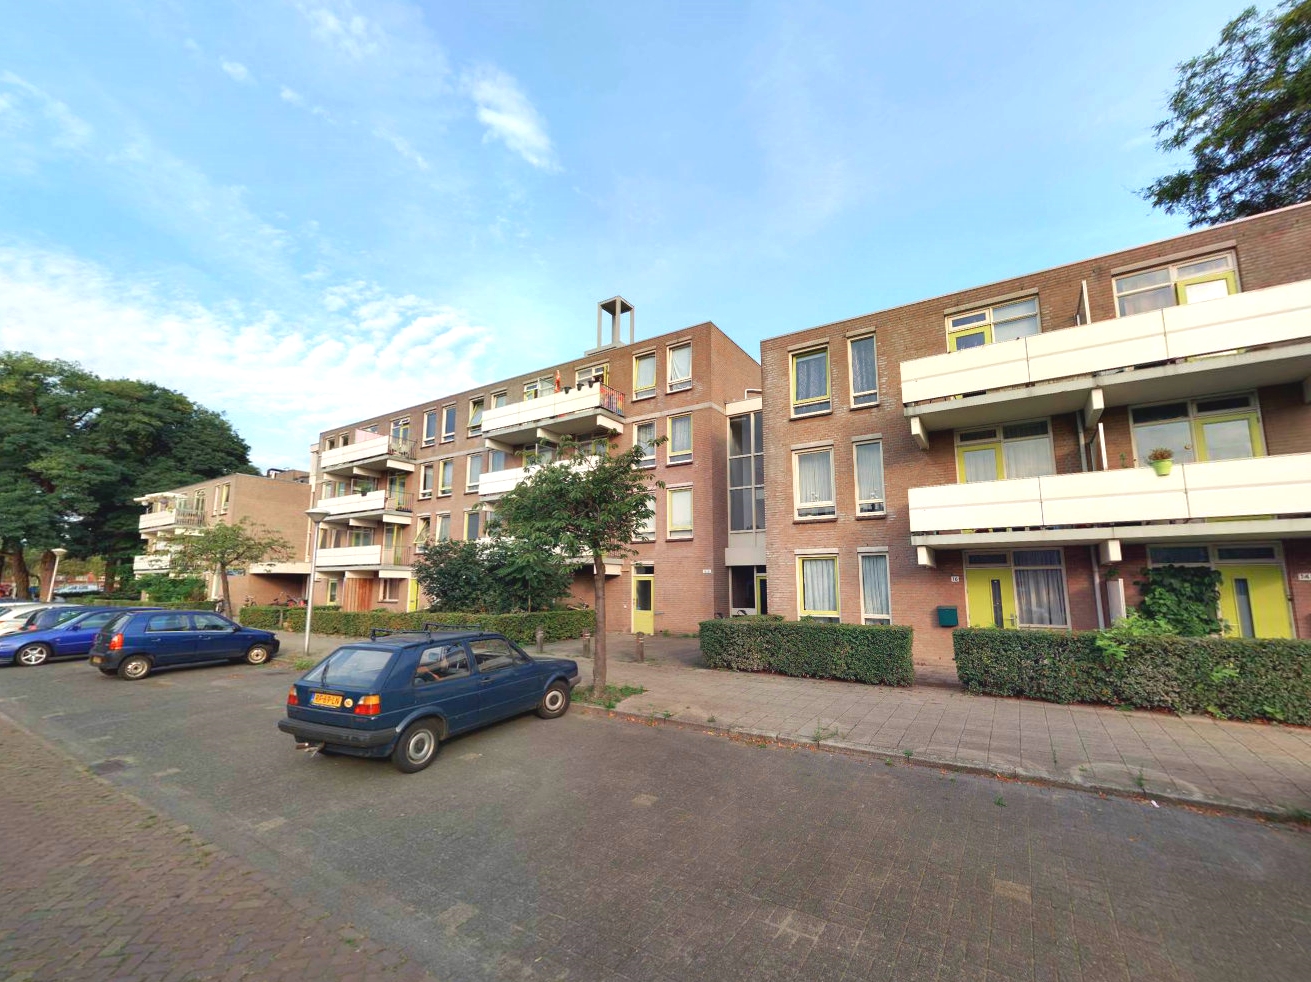 Loderstraat 1, 5652 NR Eindhoven, Nederland